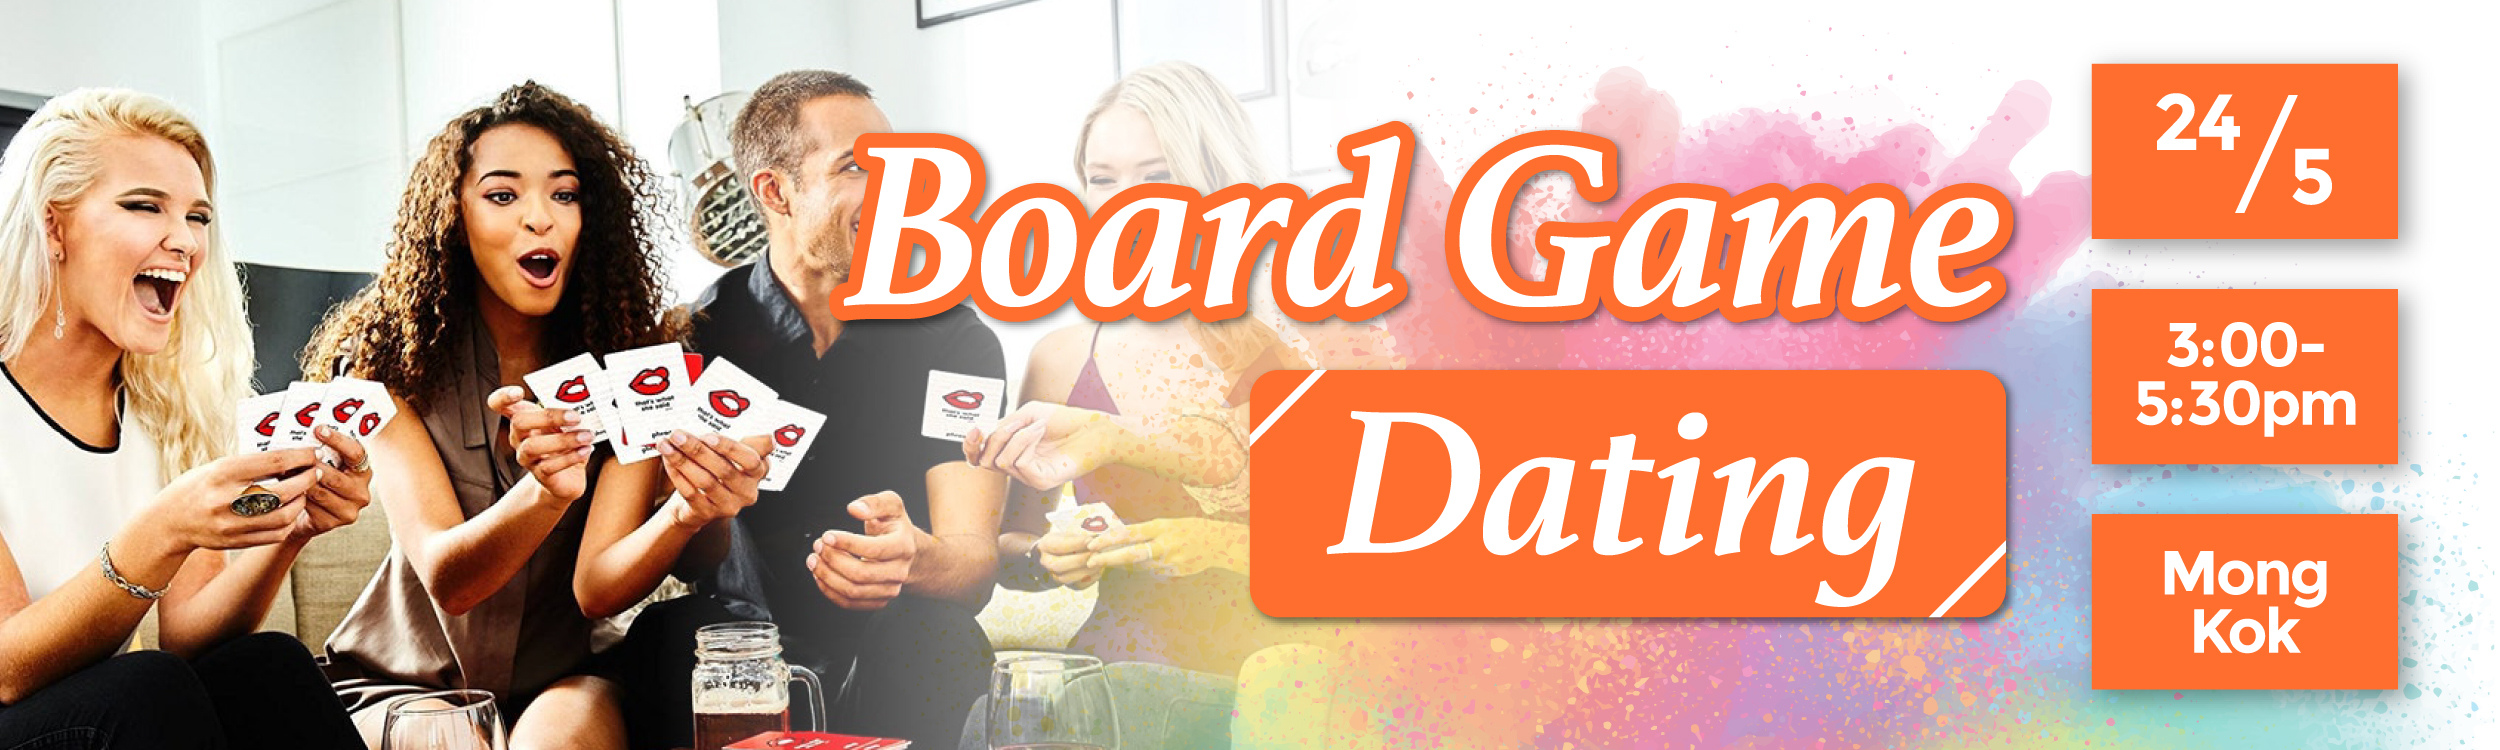 最新Speed Dating約會消息: Board Game Dating Party